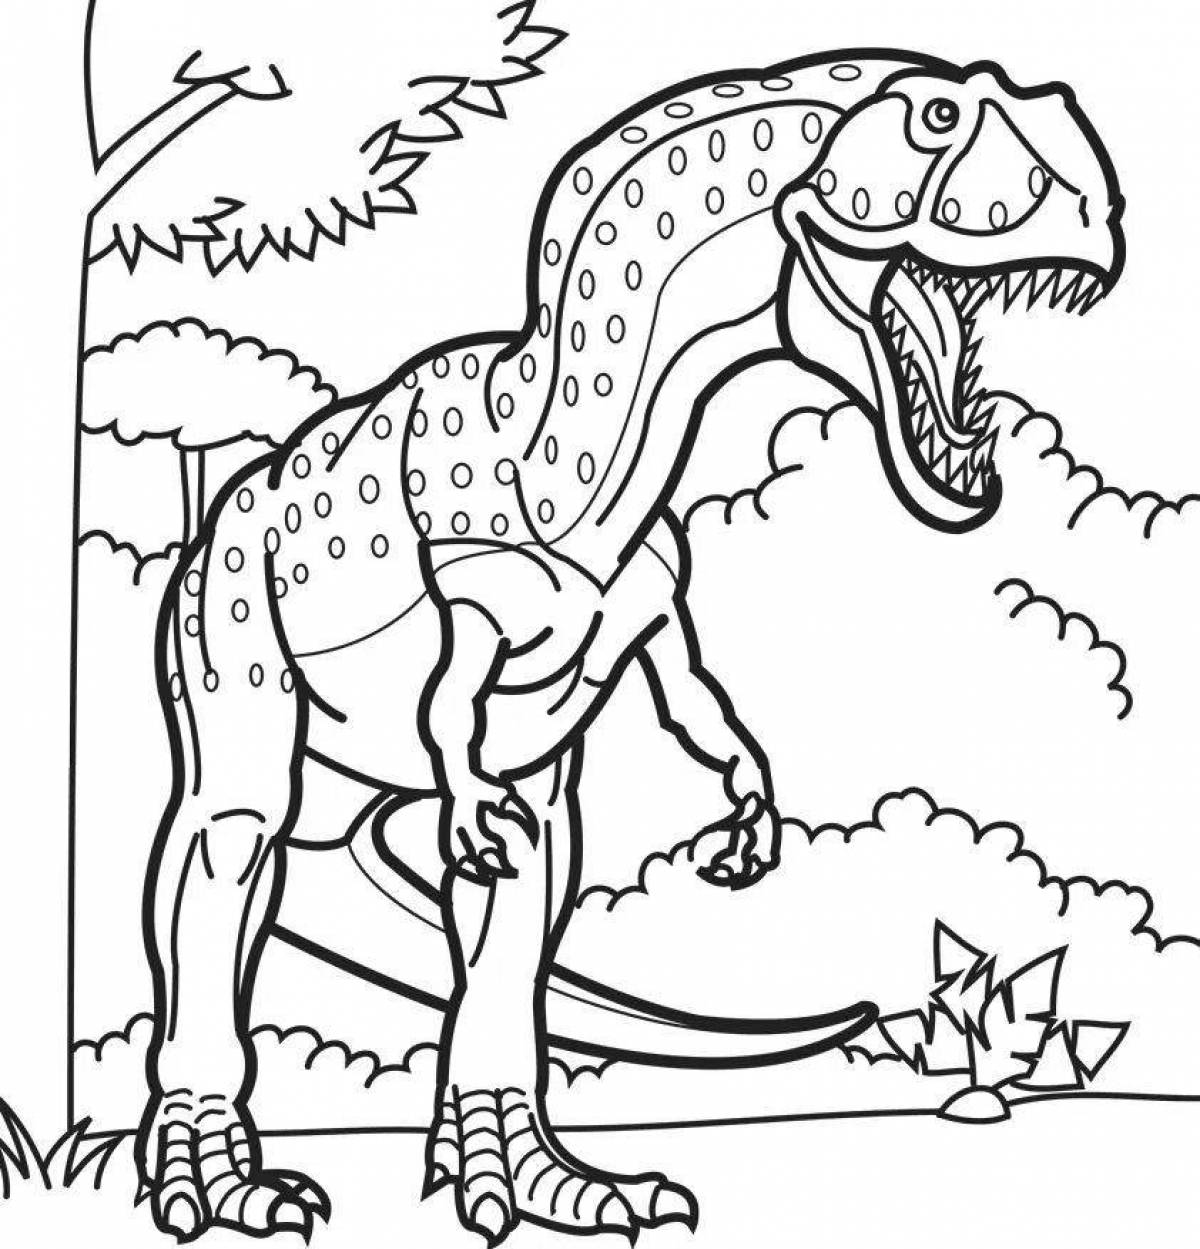 Развлекательная раскраска динозавров для детей 6-7 лет